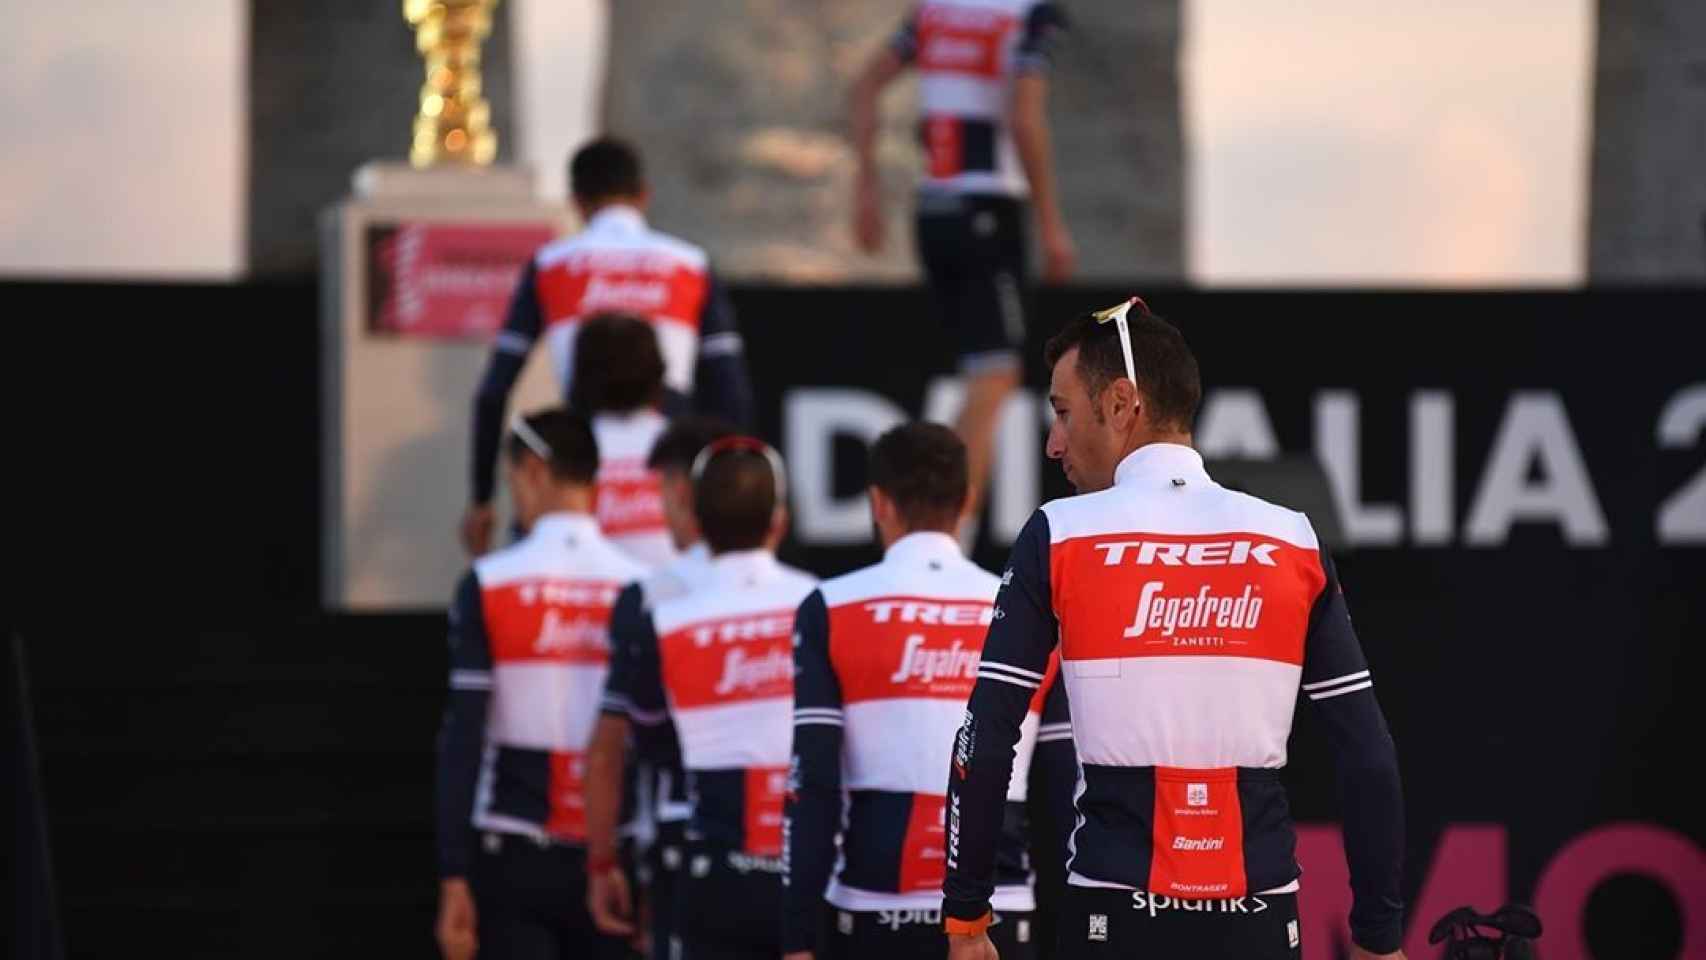 El equipo Trek en la presentación del Giro de Italia